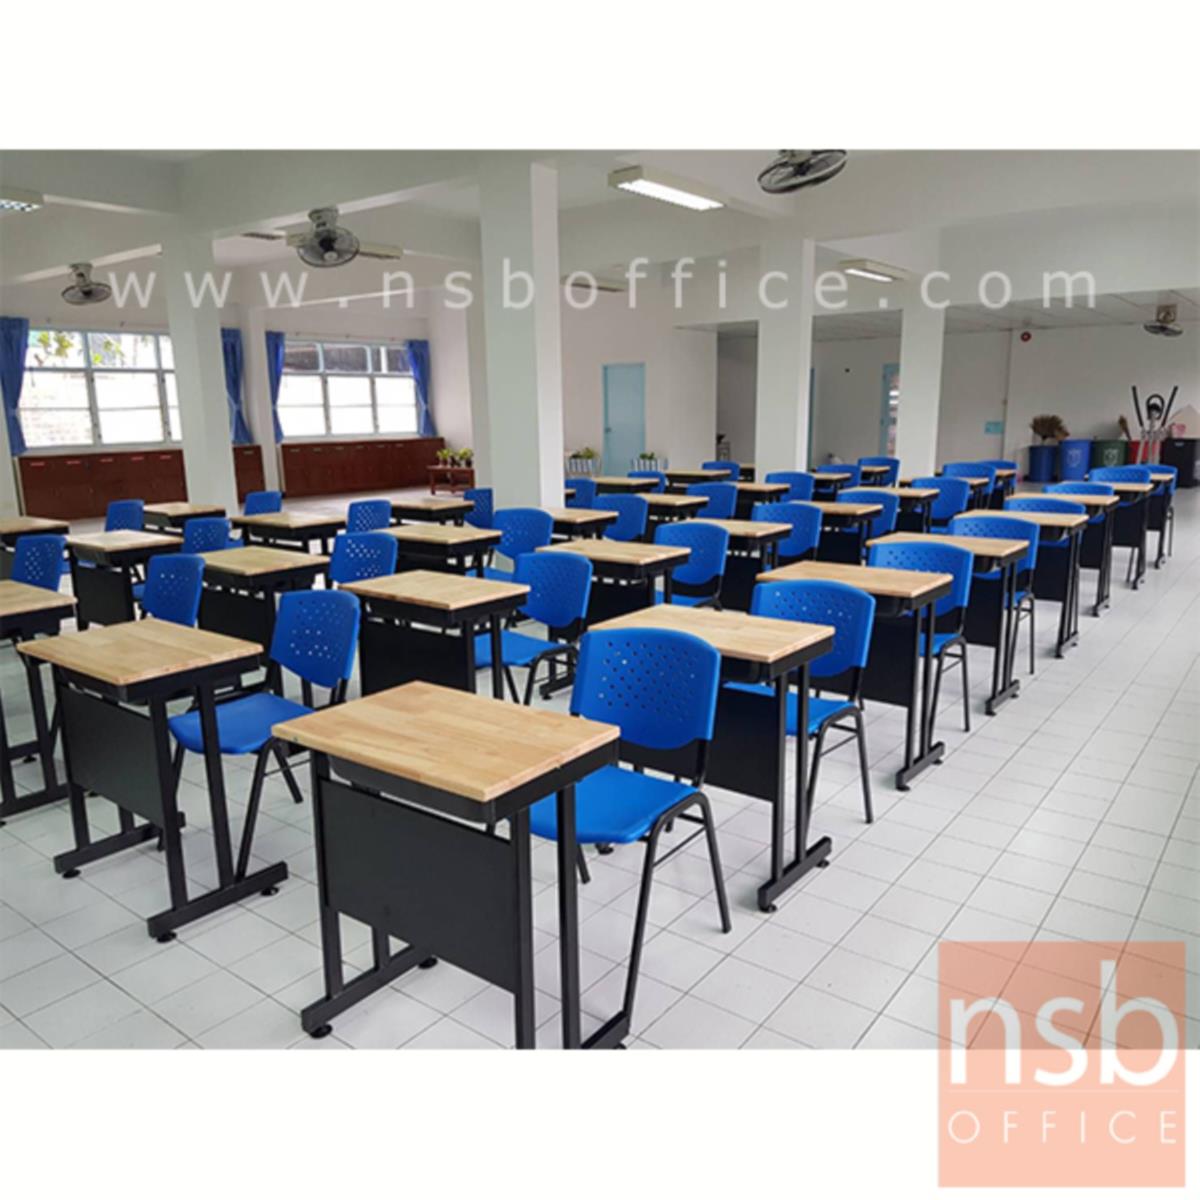 A17A050:ชุดโต๊ะและเก้าอี้นักเรียน  รุ่น KN-5330  ระดับประถม-มัธยม